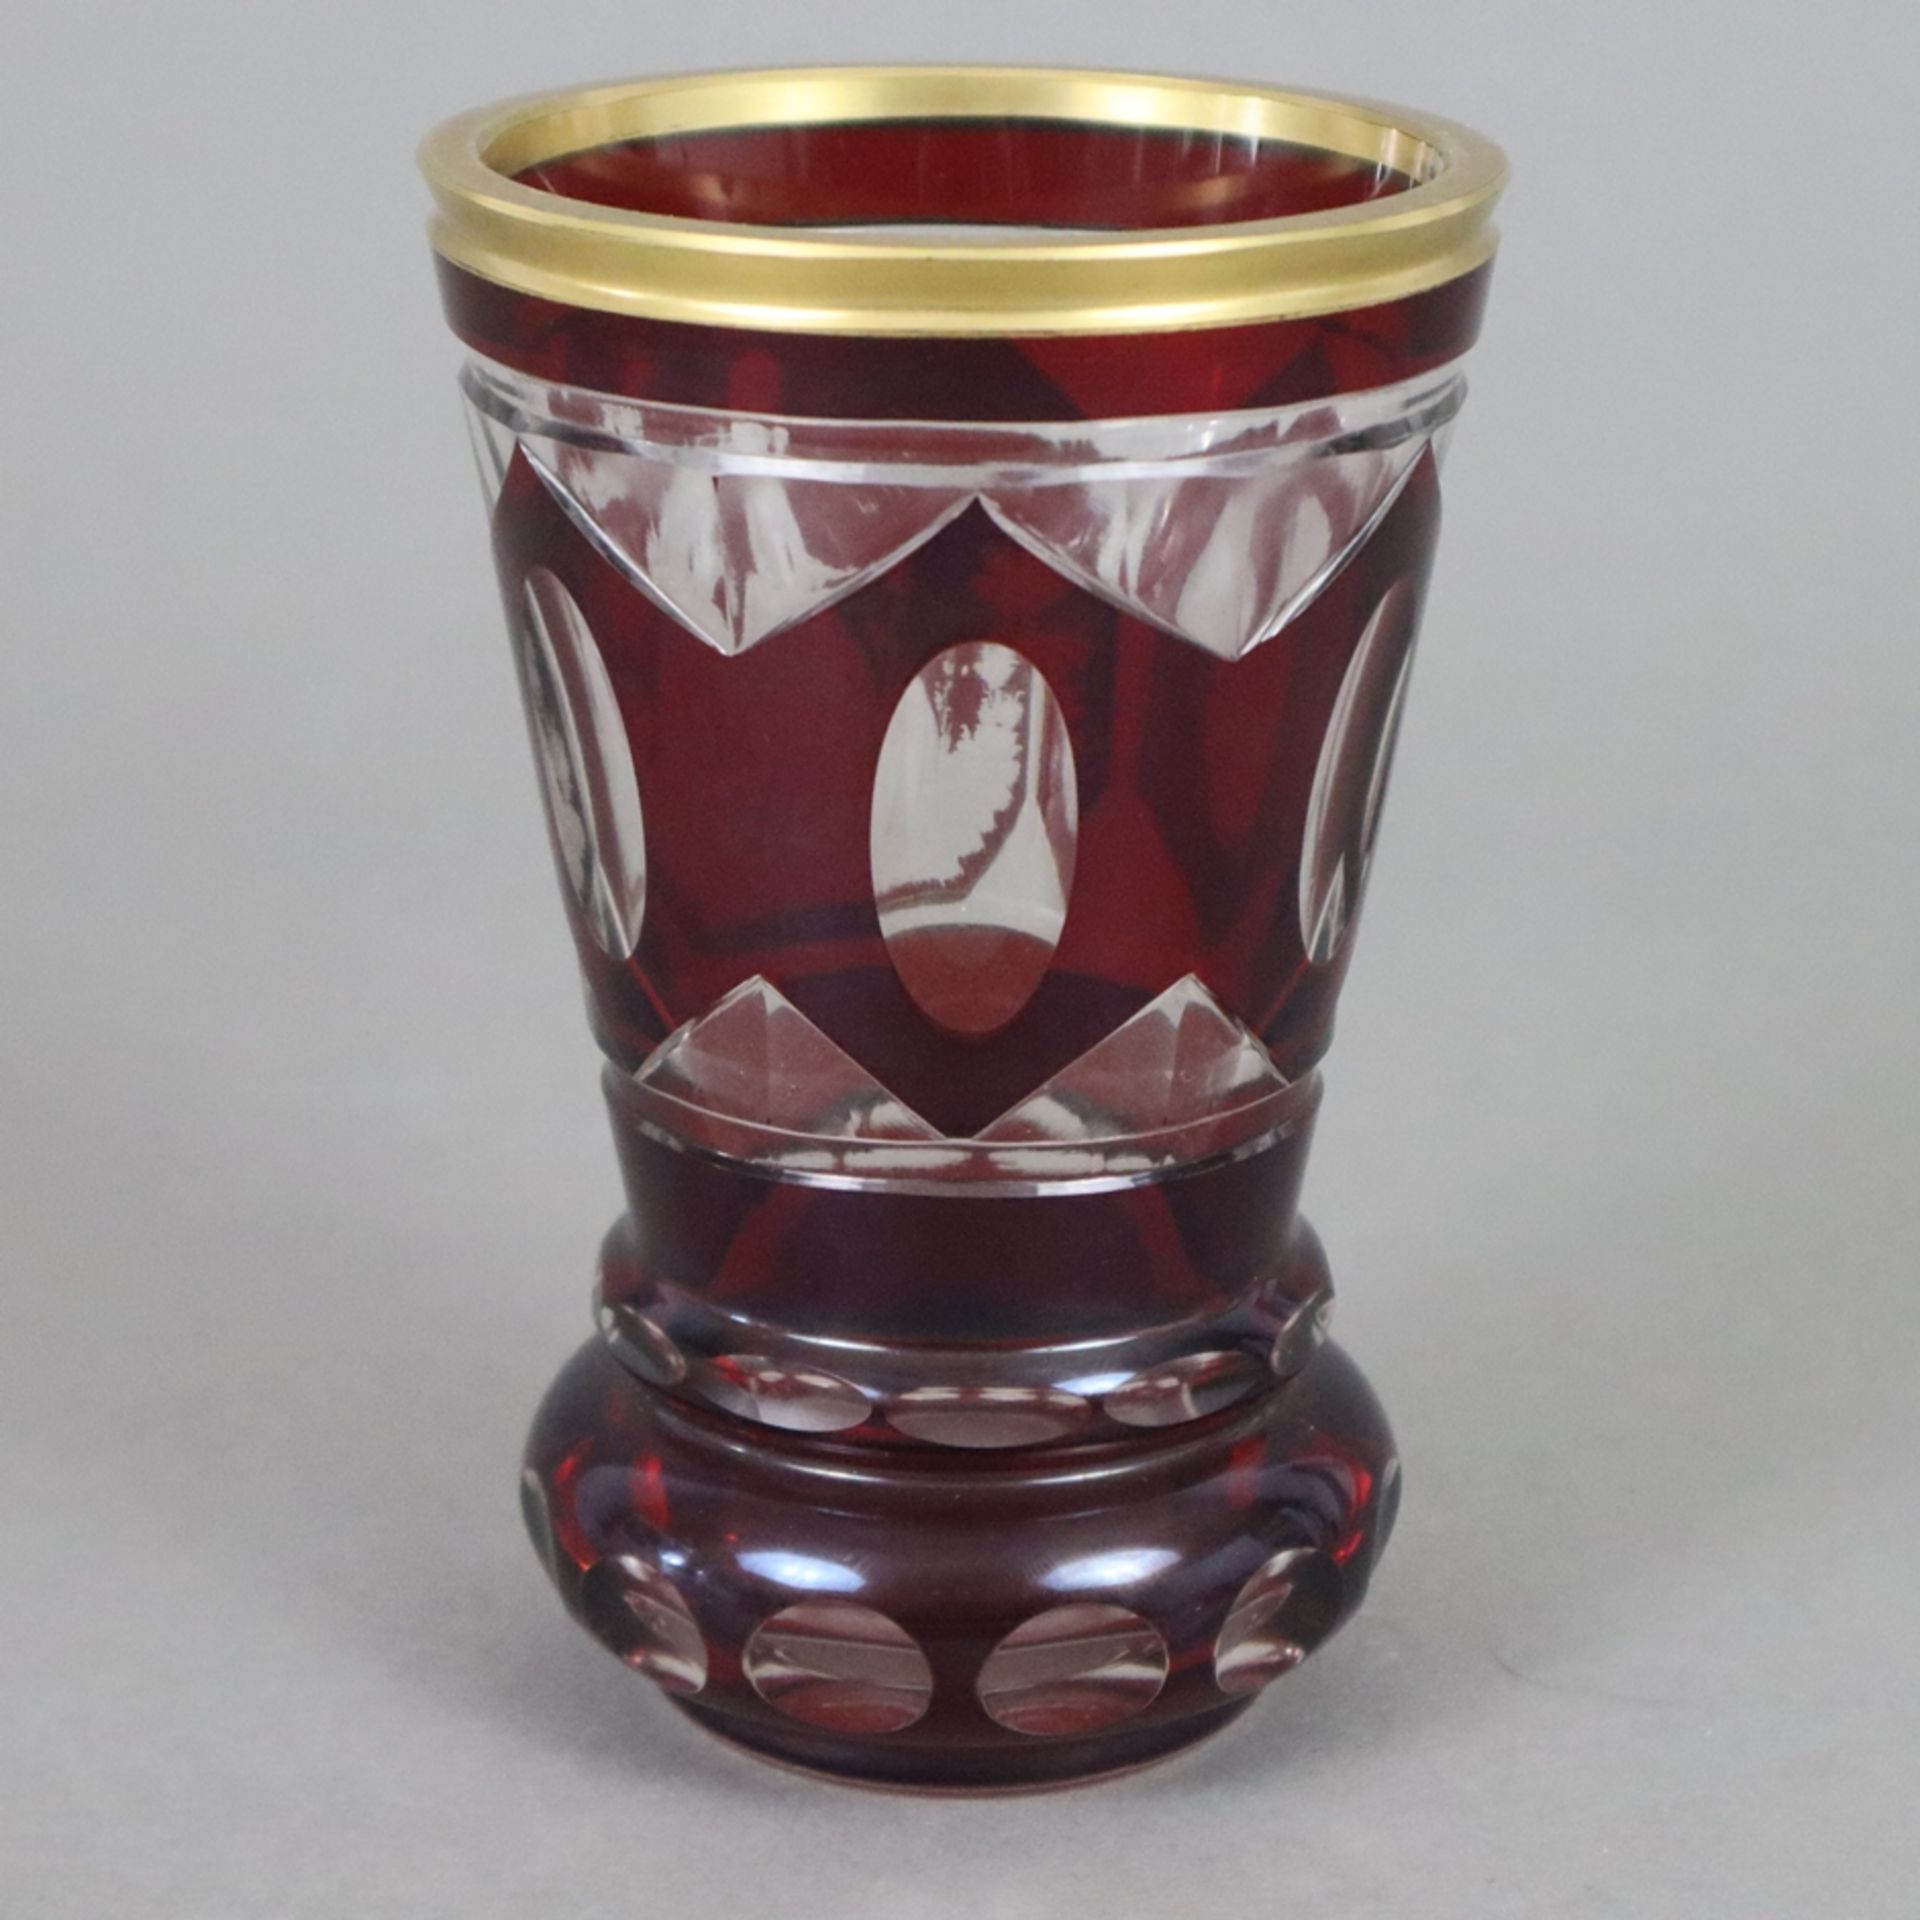 Ranftbecher - Böhmen 19. Jh., farbloses Glas, rot gebeizt, vergoldet, geschliffen, schauseitig Bild - Bild 6 aus 7